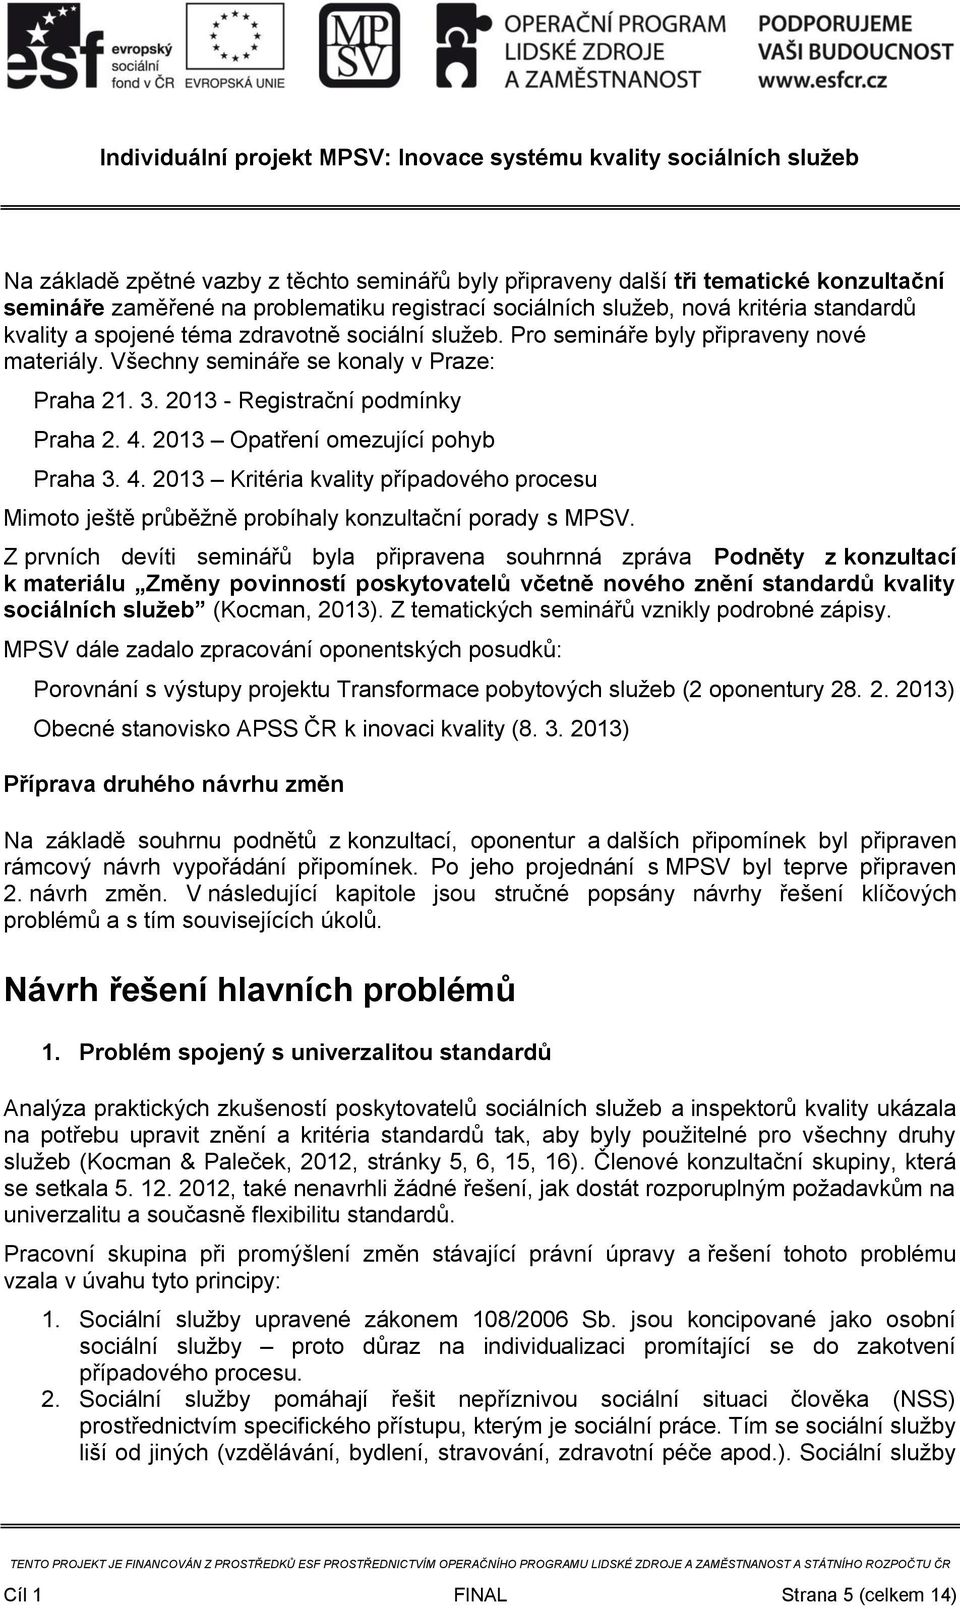 2013 Opatření omezující pohyb Praha 3. 4. 2013 Kritéria kvality případového procesu Mimoto ještě průběžně probíhaly konzultační porady s MPSV.